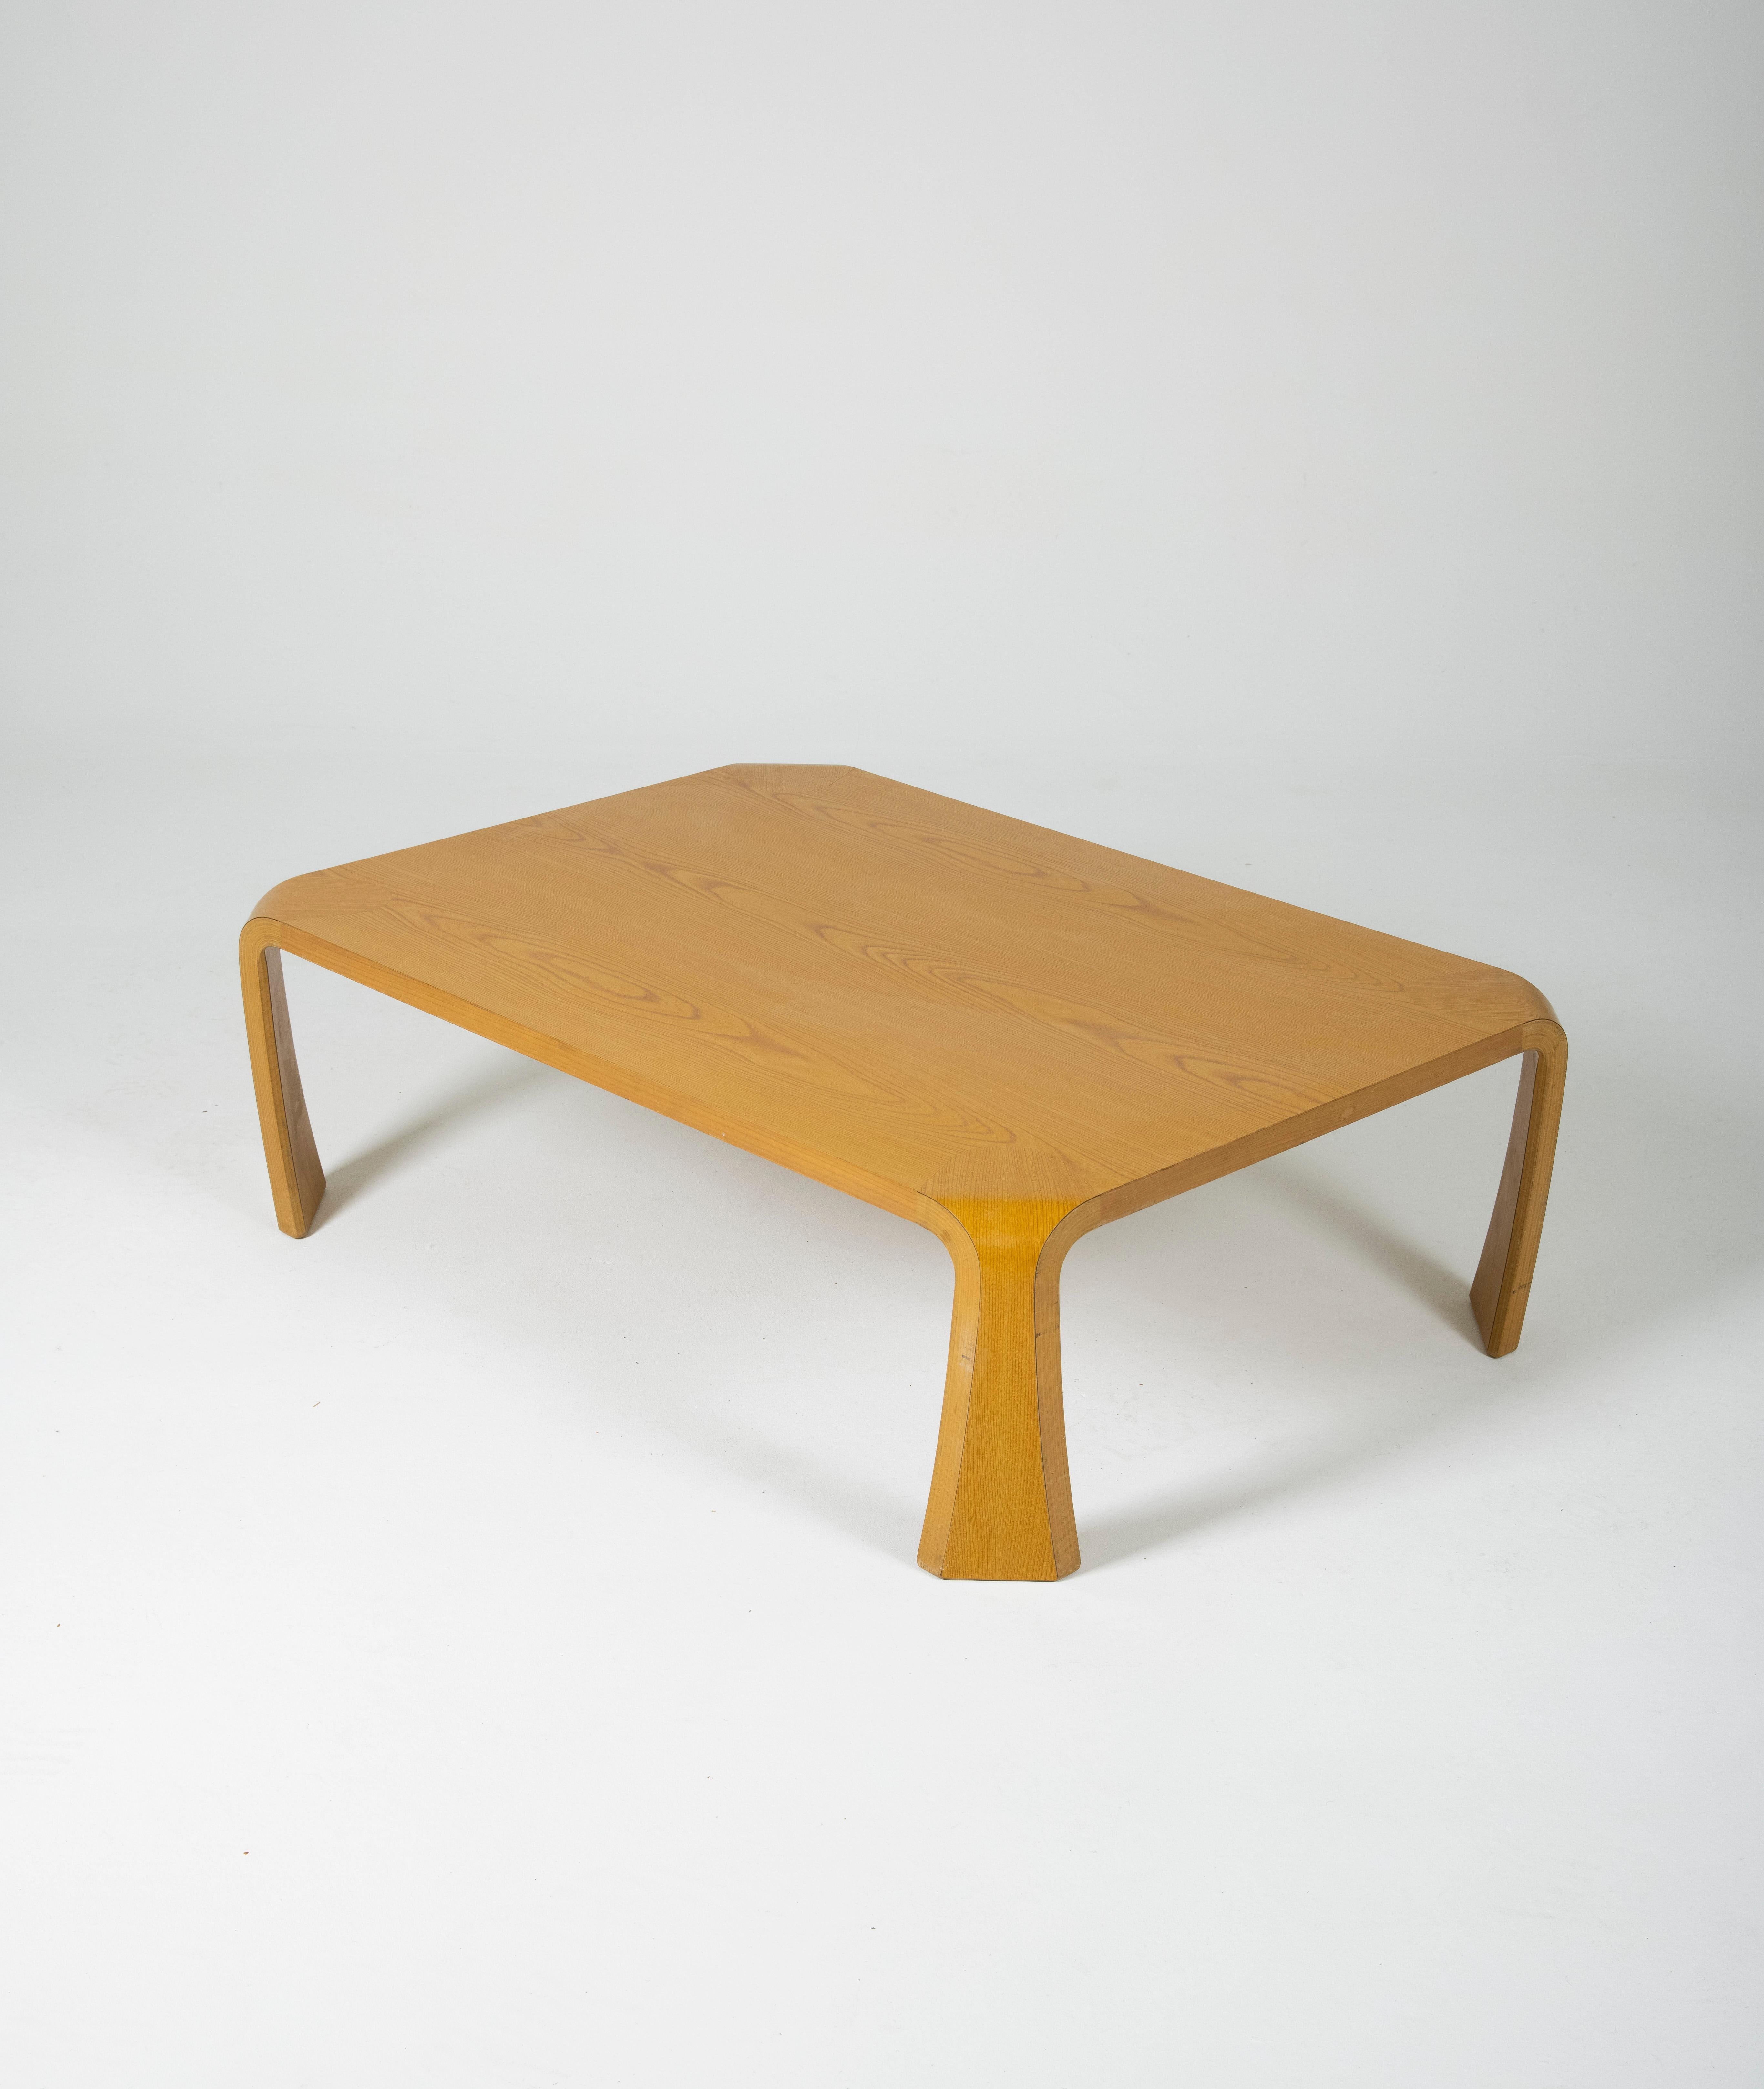 Couchtisch Saburo Inui für Tendo Mokko in Japan in den 1960er Jahren. Rechteckige Tischplatte aus Melaminholz und geschwungene Beine. Guter Vintage-Zustand.
LP597-598